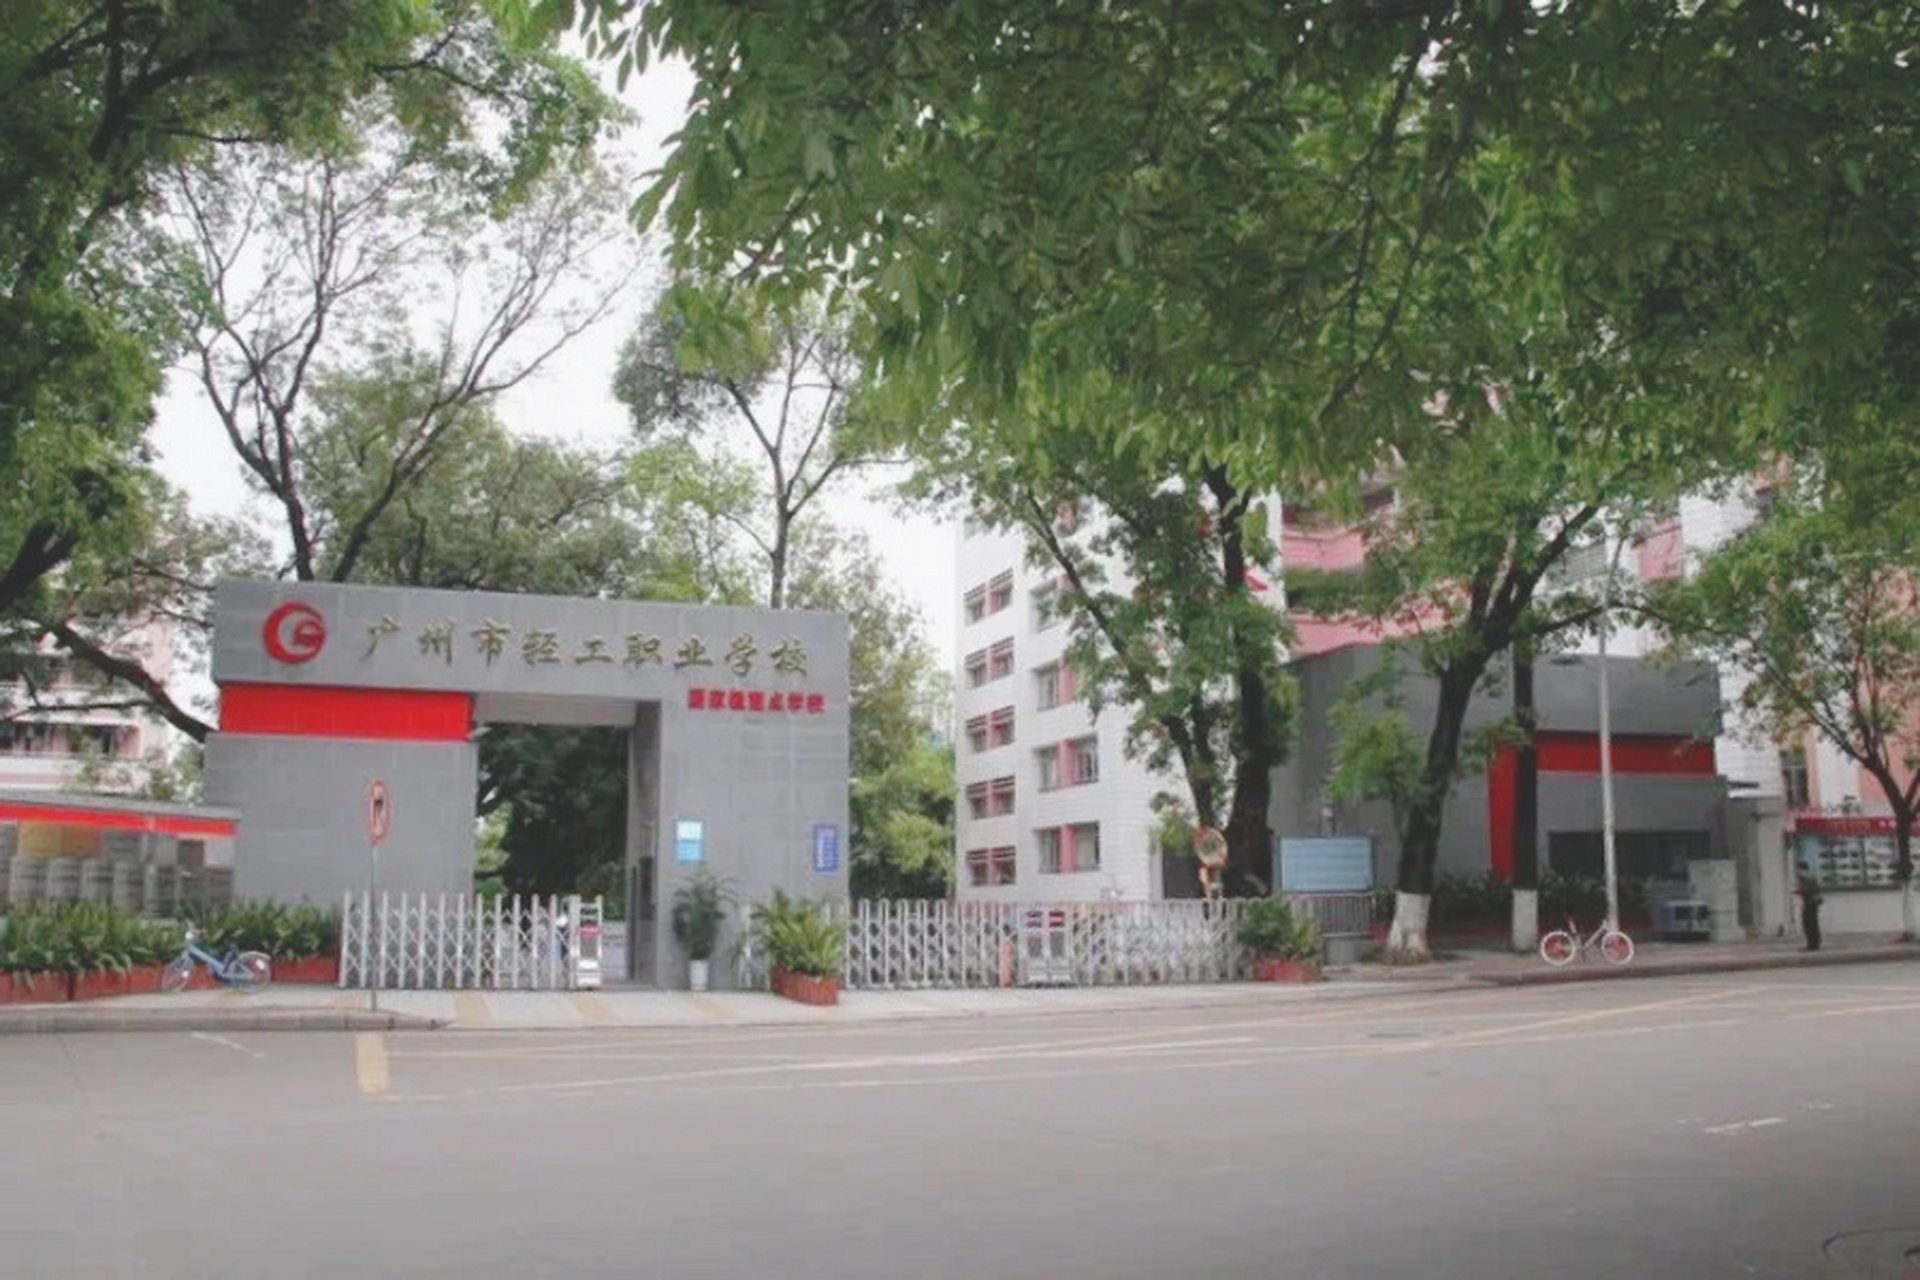 广州市轻工职业学校 广州市轻工职业学校是广州市教育局直属的唯一的